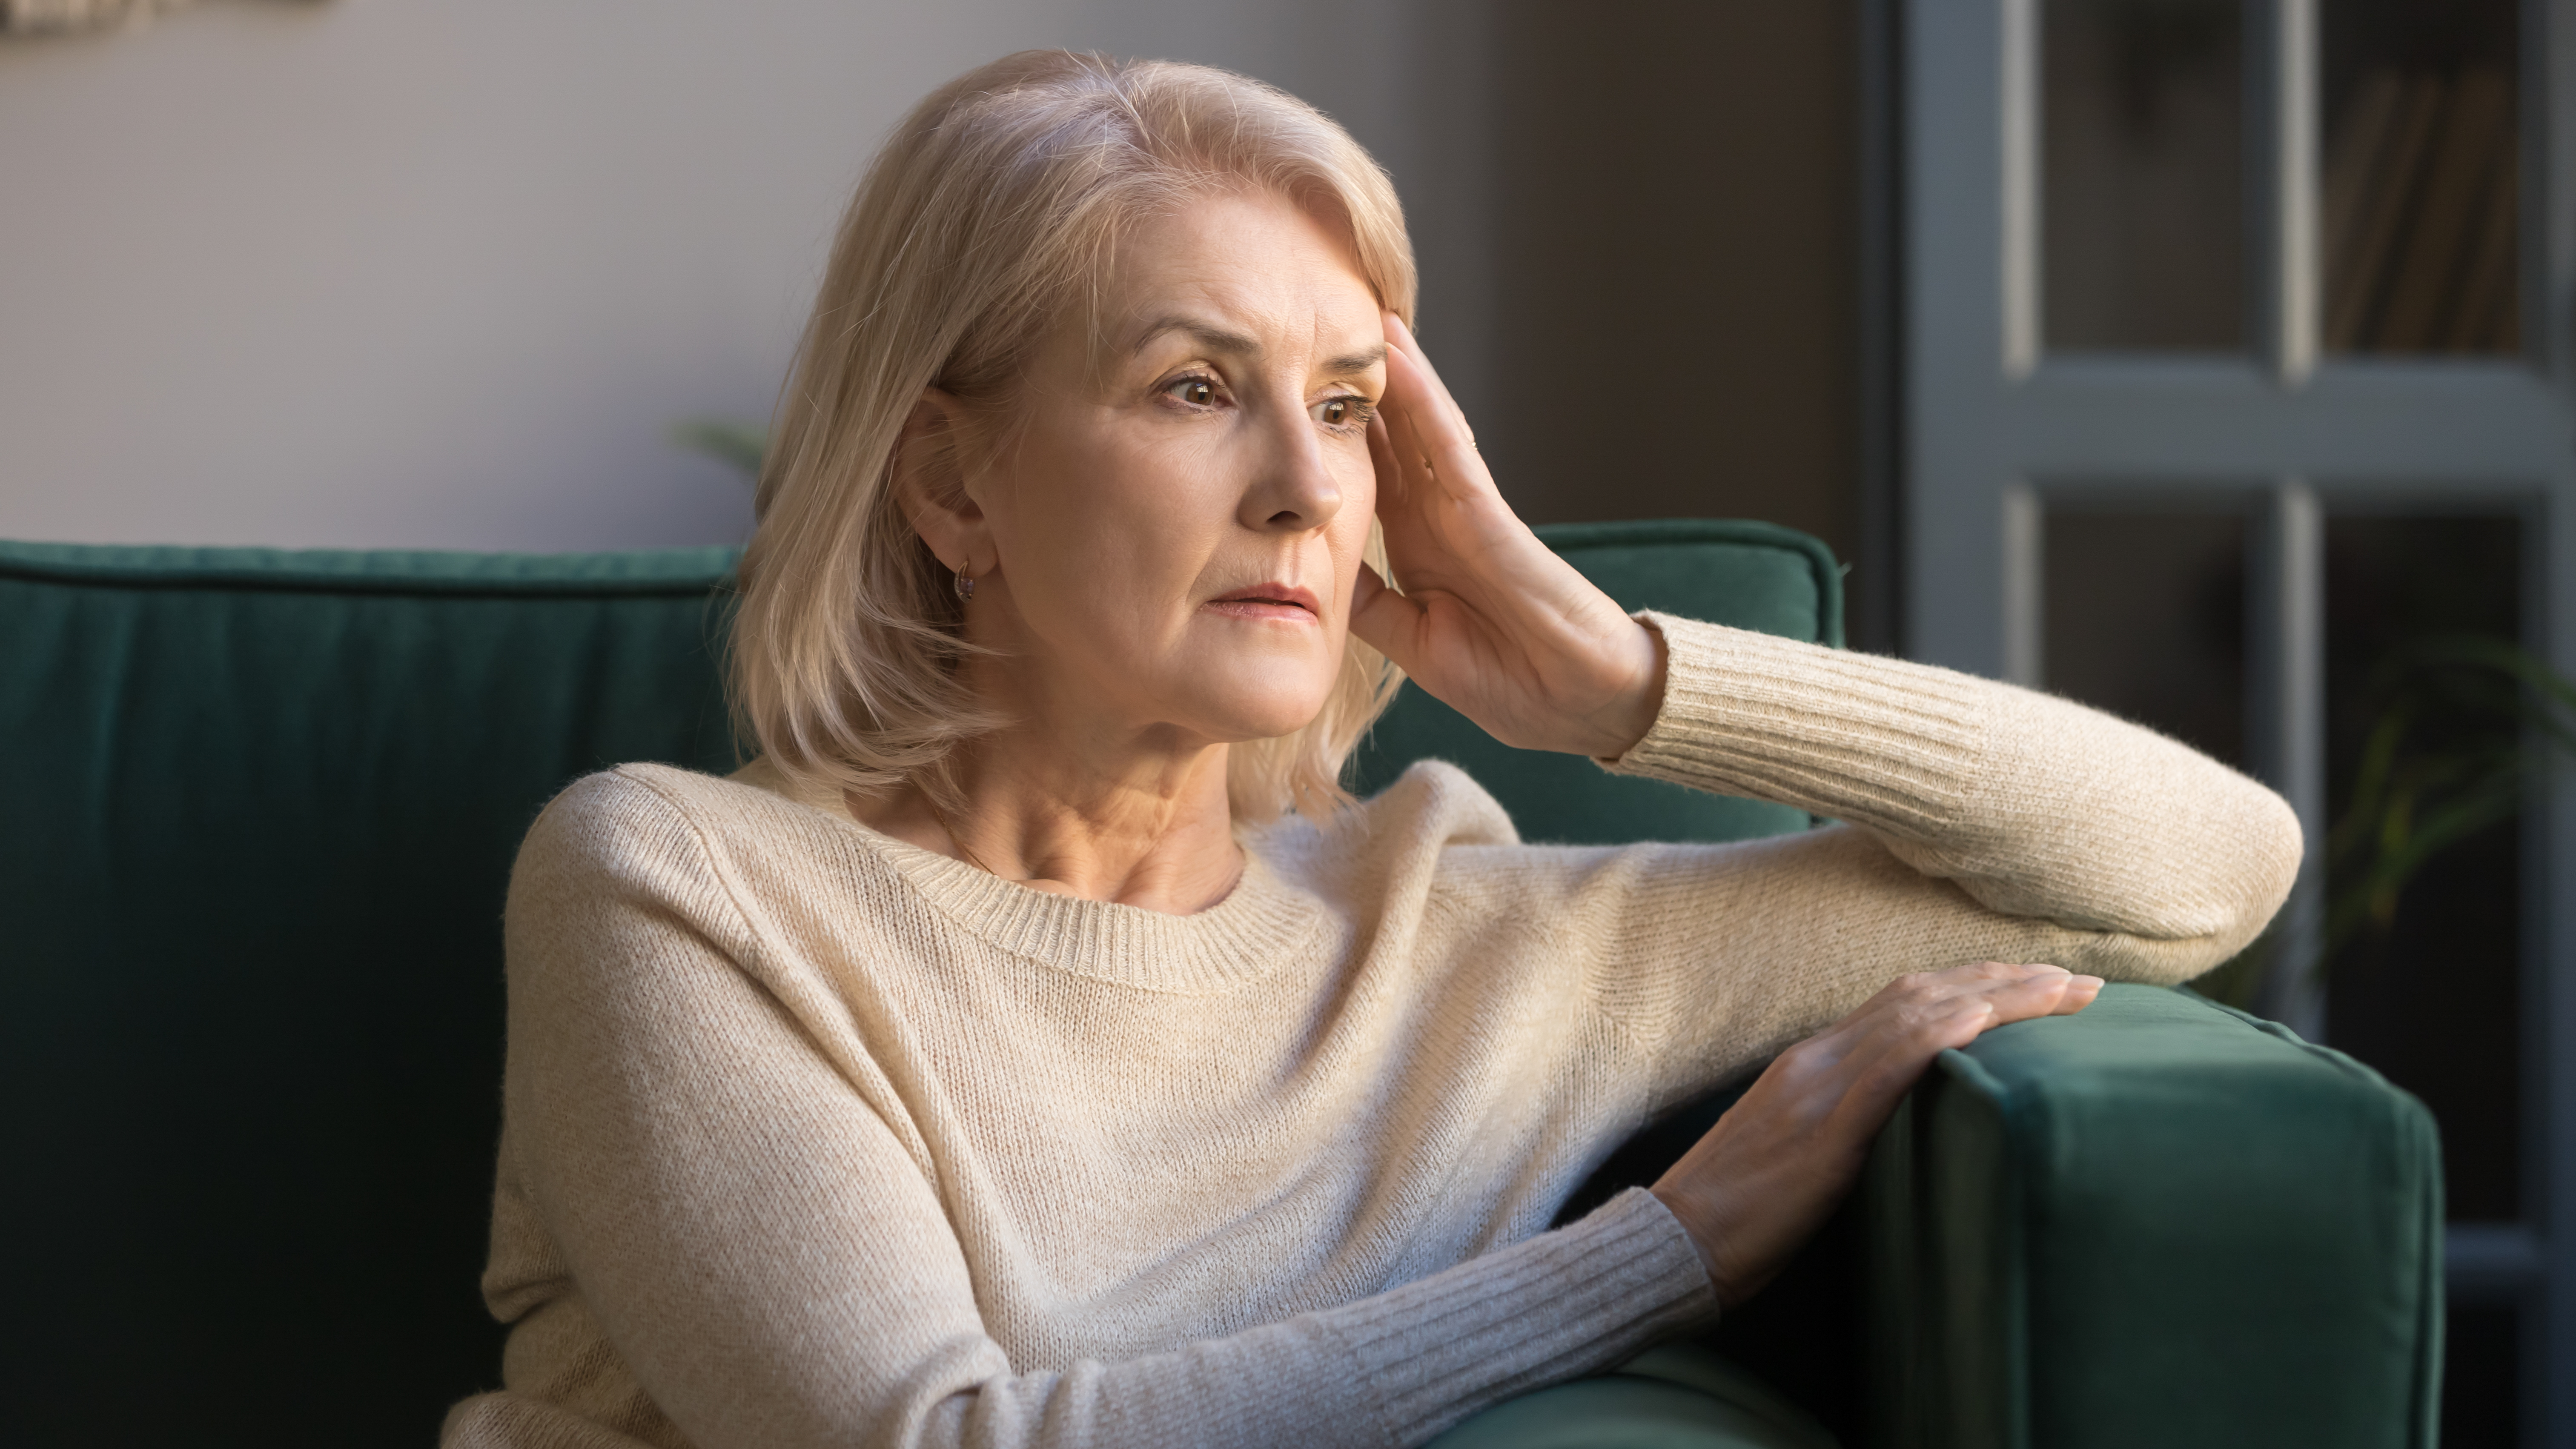 An upset senior woman | Source: Shutterstock